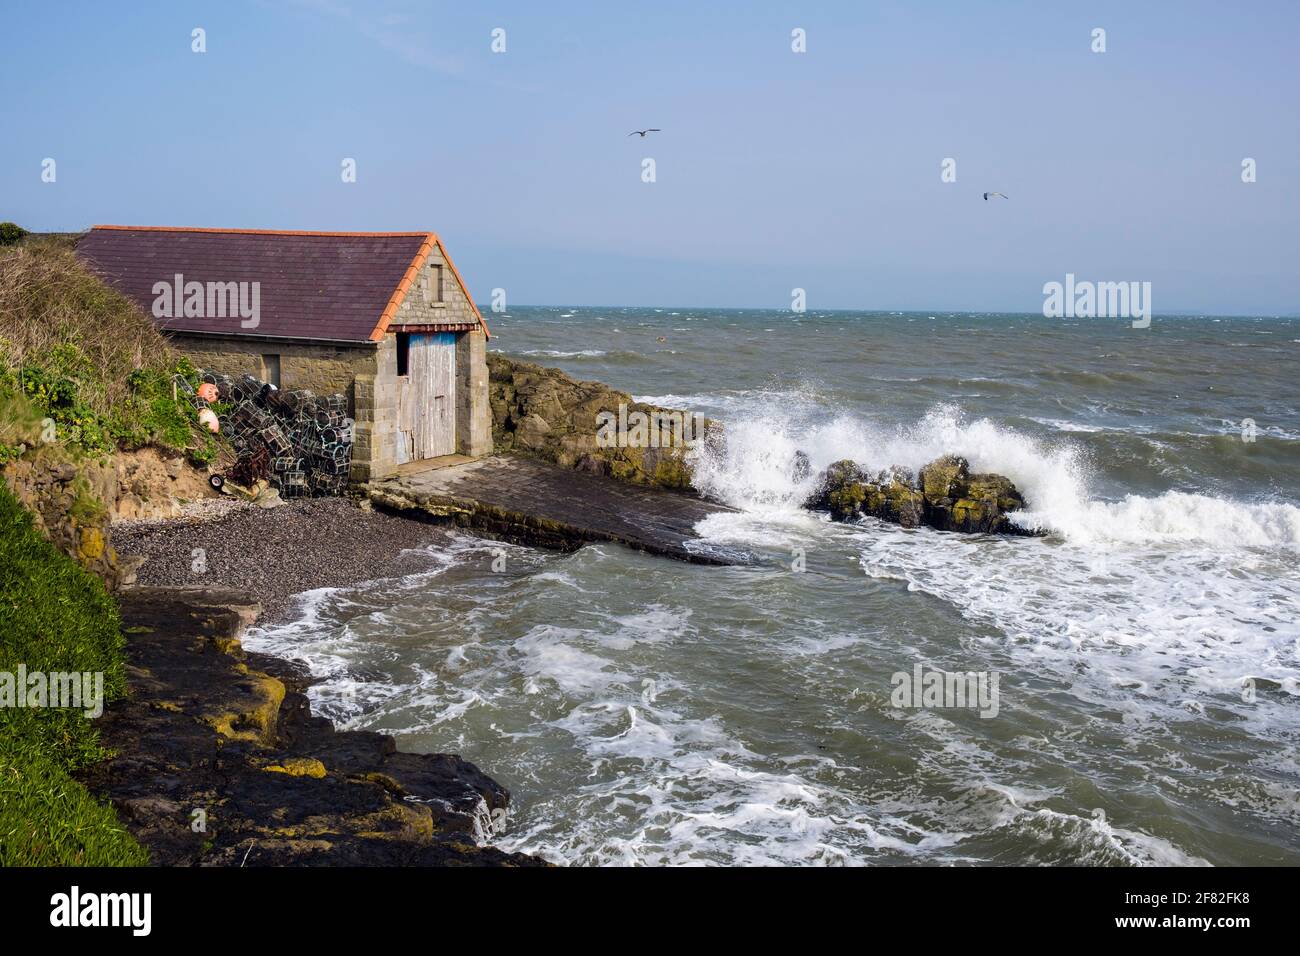 Raues Meer, das bei Flut am Bootshaus der alten Rettungsbootstation an einem windigen Tag auf Felsen stürzt. Moelfre, Isle of Anglesey, Nordwales, Großbritannien Stockfoto